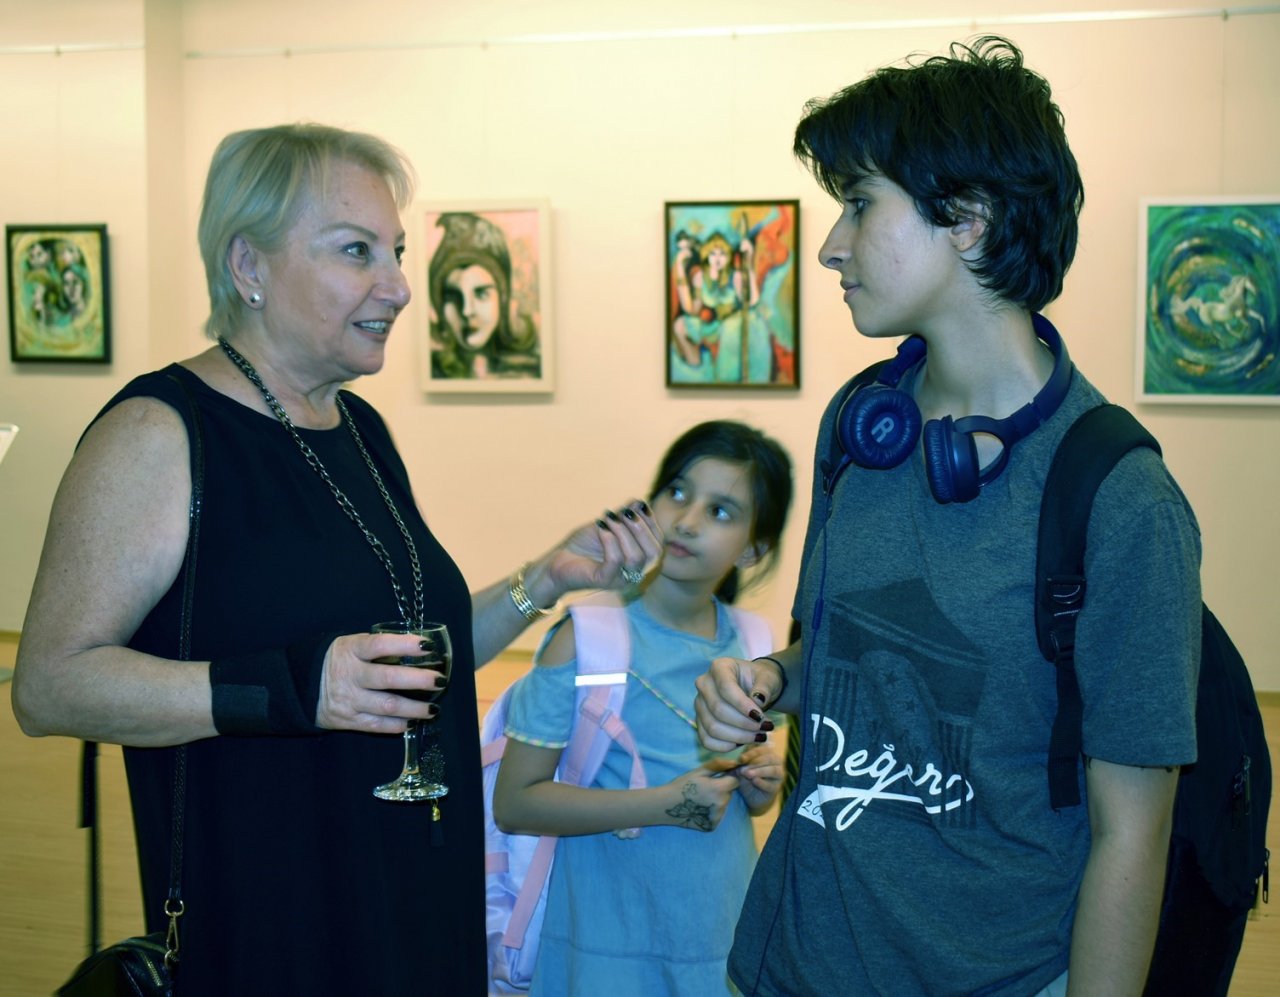 Ergül’ün Sanko Sanat Galerisi’nde açtığı sergi devam ediyor